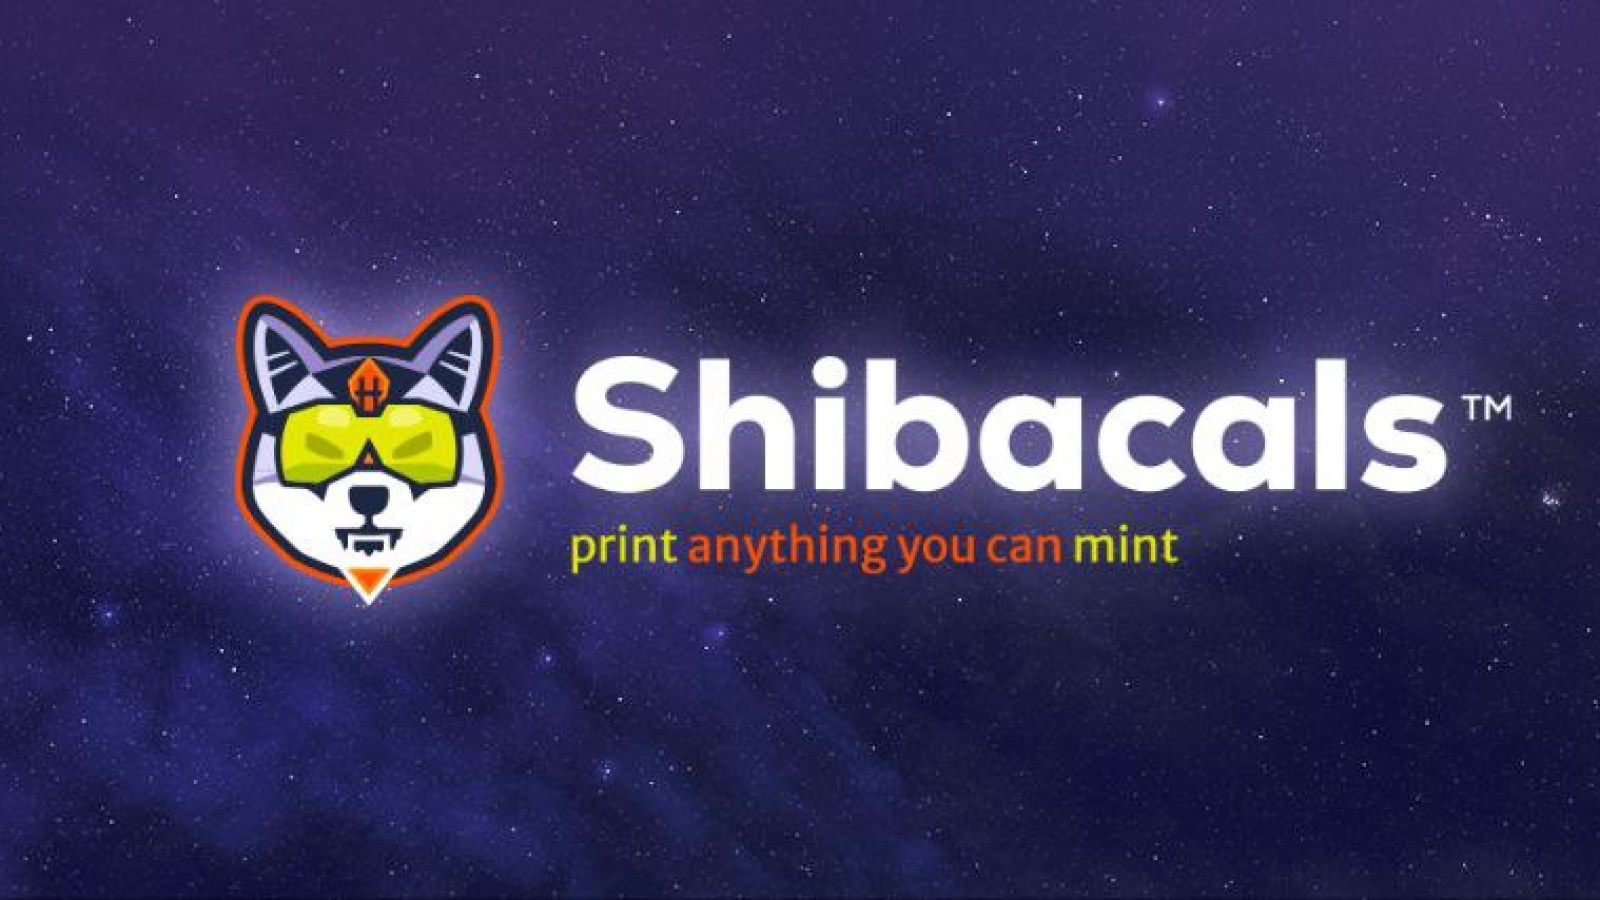 Shibacals e Busta Rhymes colaboram para o lançamento do Shiba Inu NFT